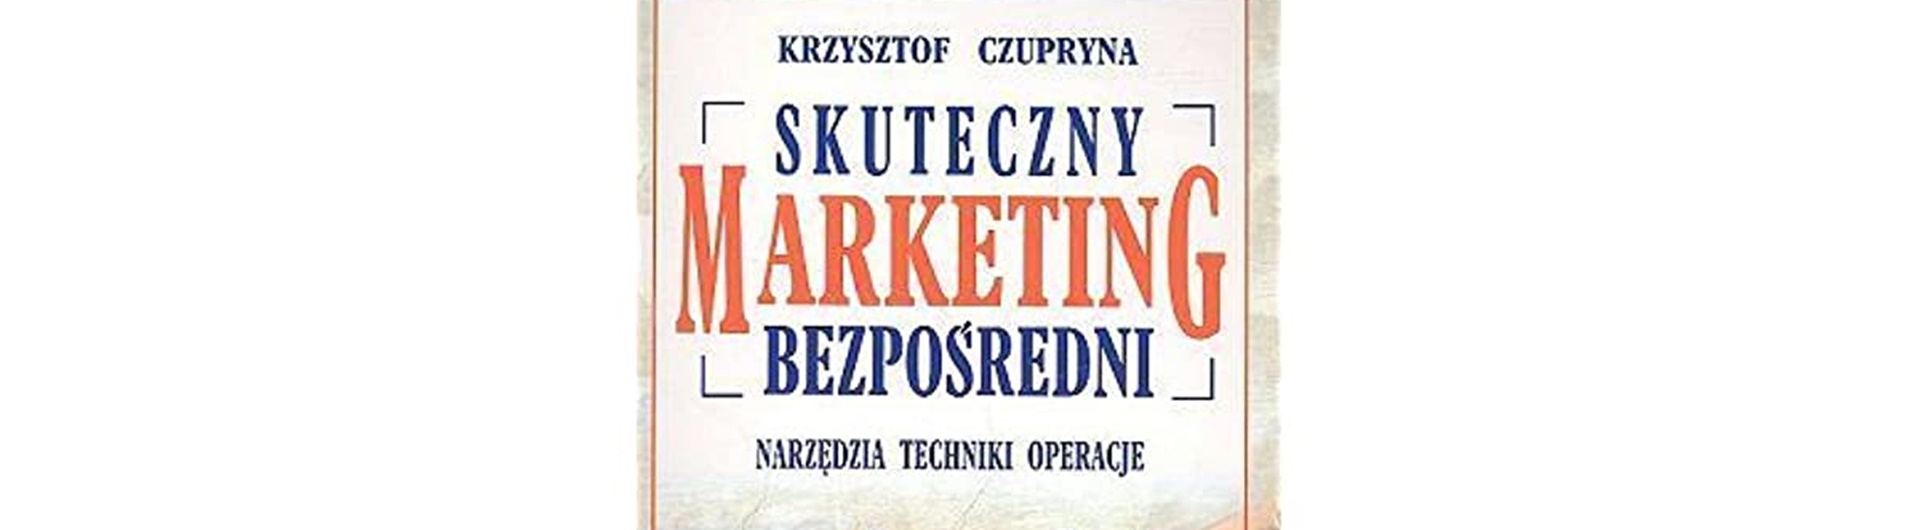 Skuteczny marketing bezpośredni – jak go widzi Krzysztof Czupryna